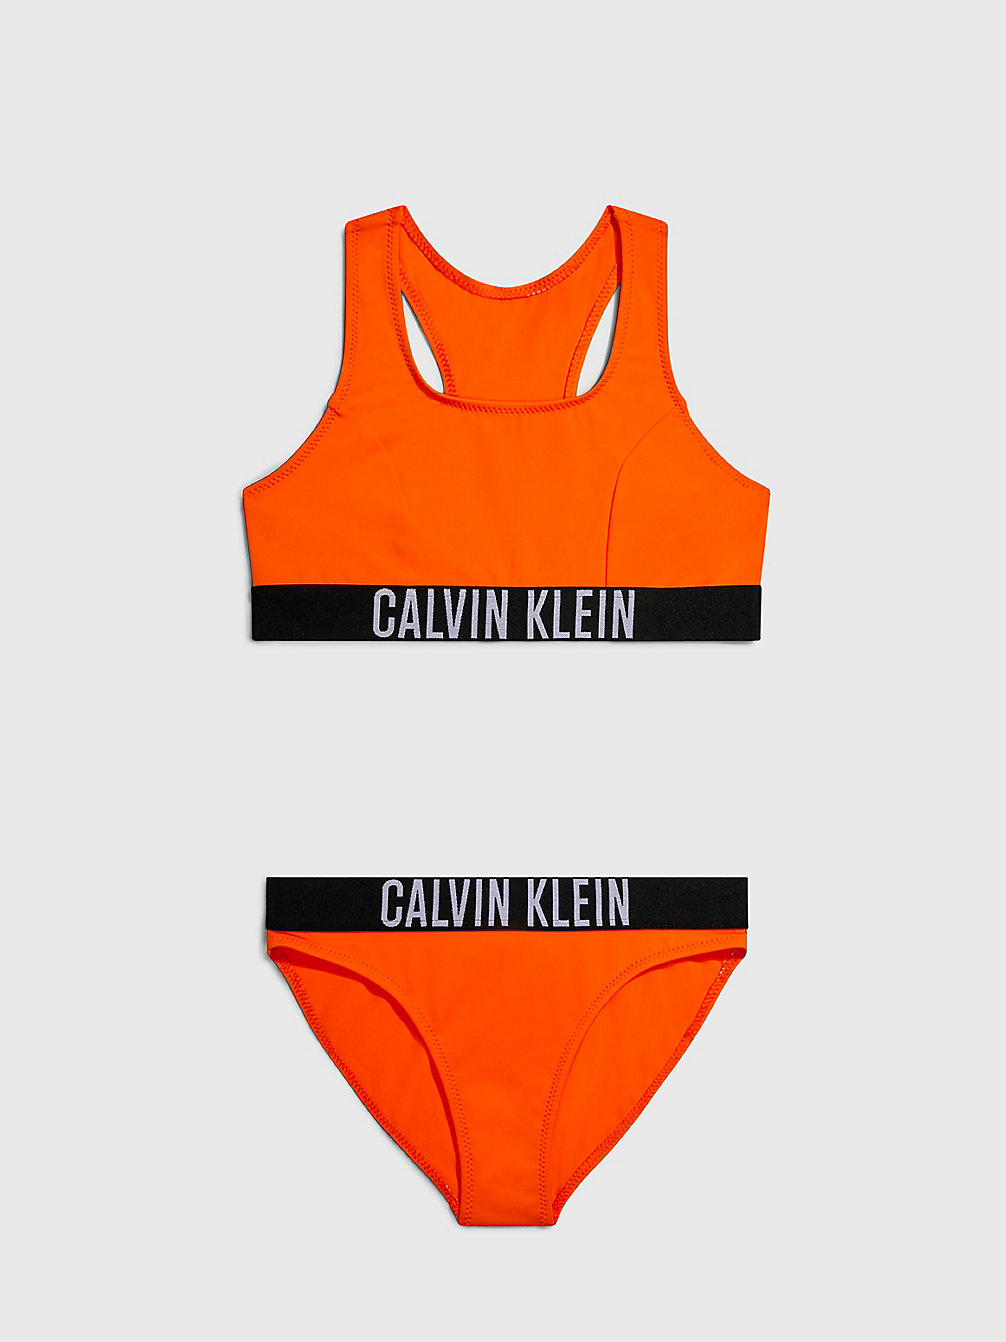 VIVID ORANGE Bikini-Set Mit Bralette Für Mädchen - Intense Power undefined Maedchen Calvin Klein